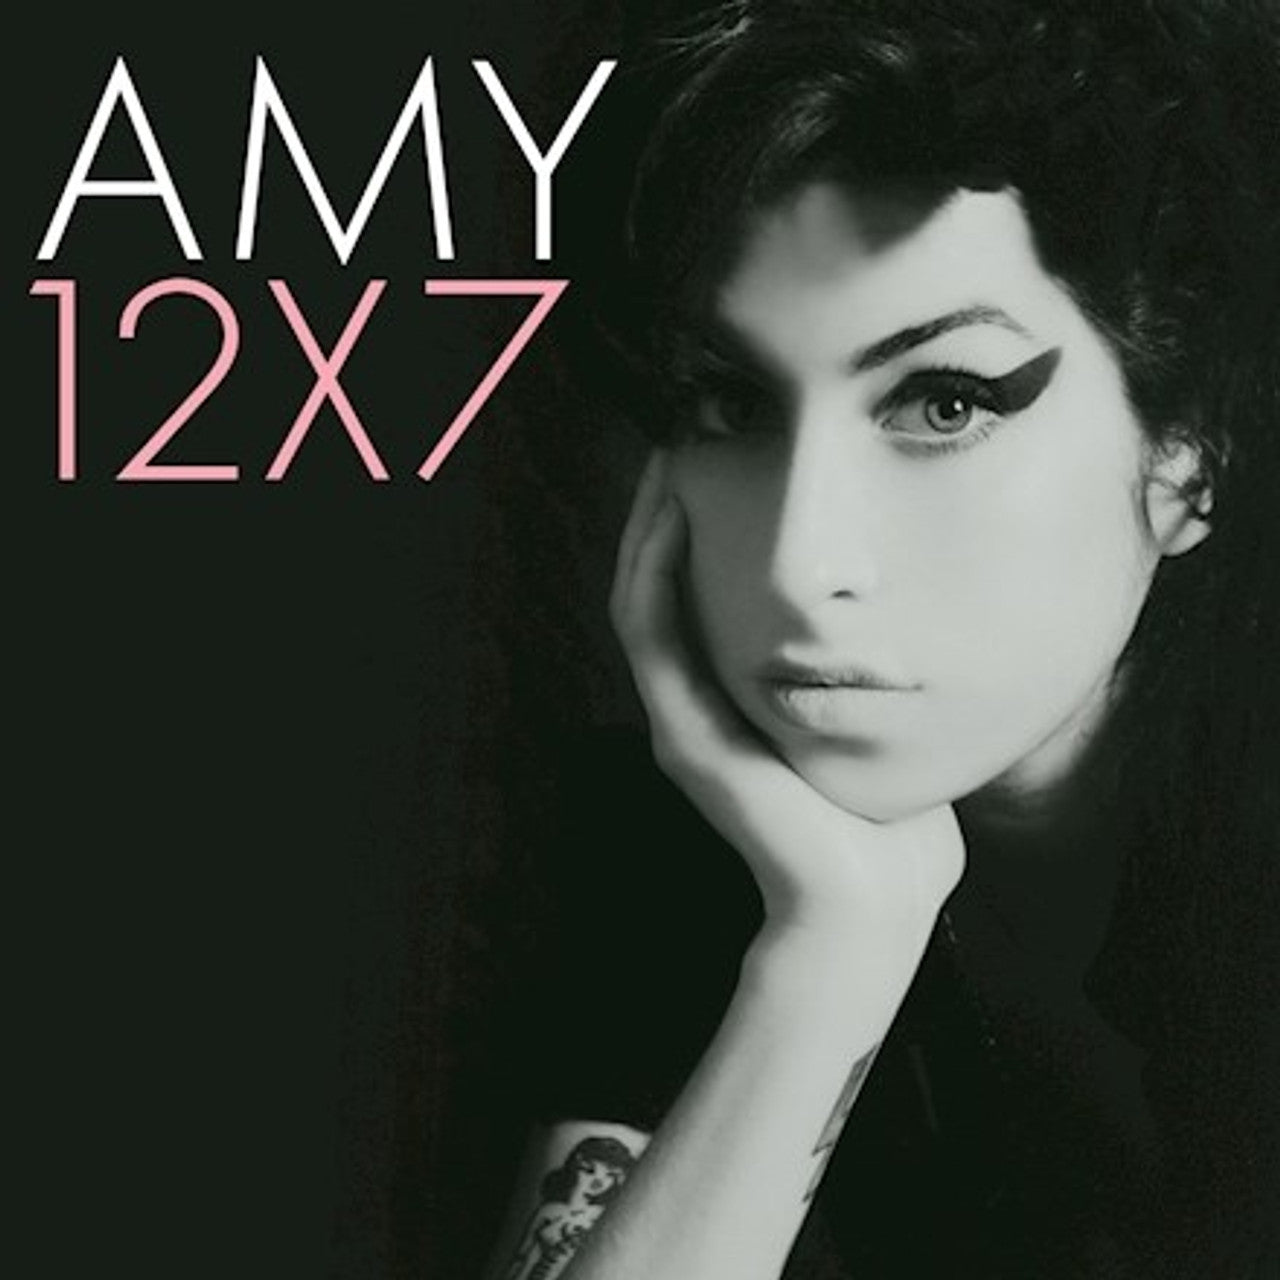 Amy 12x7 (7" Box Set)